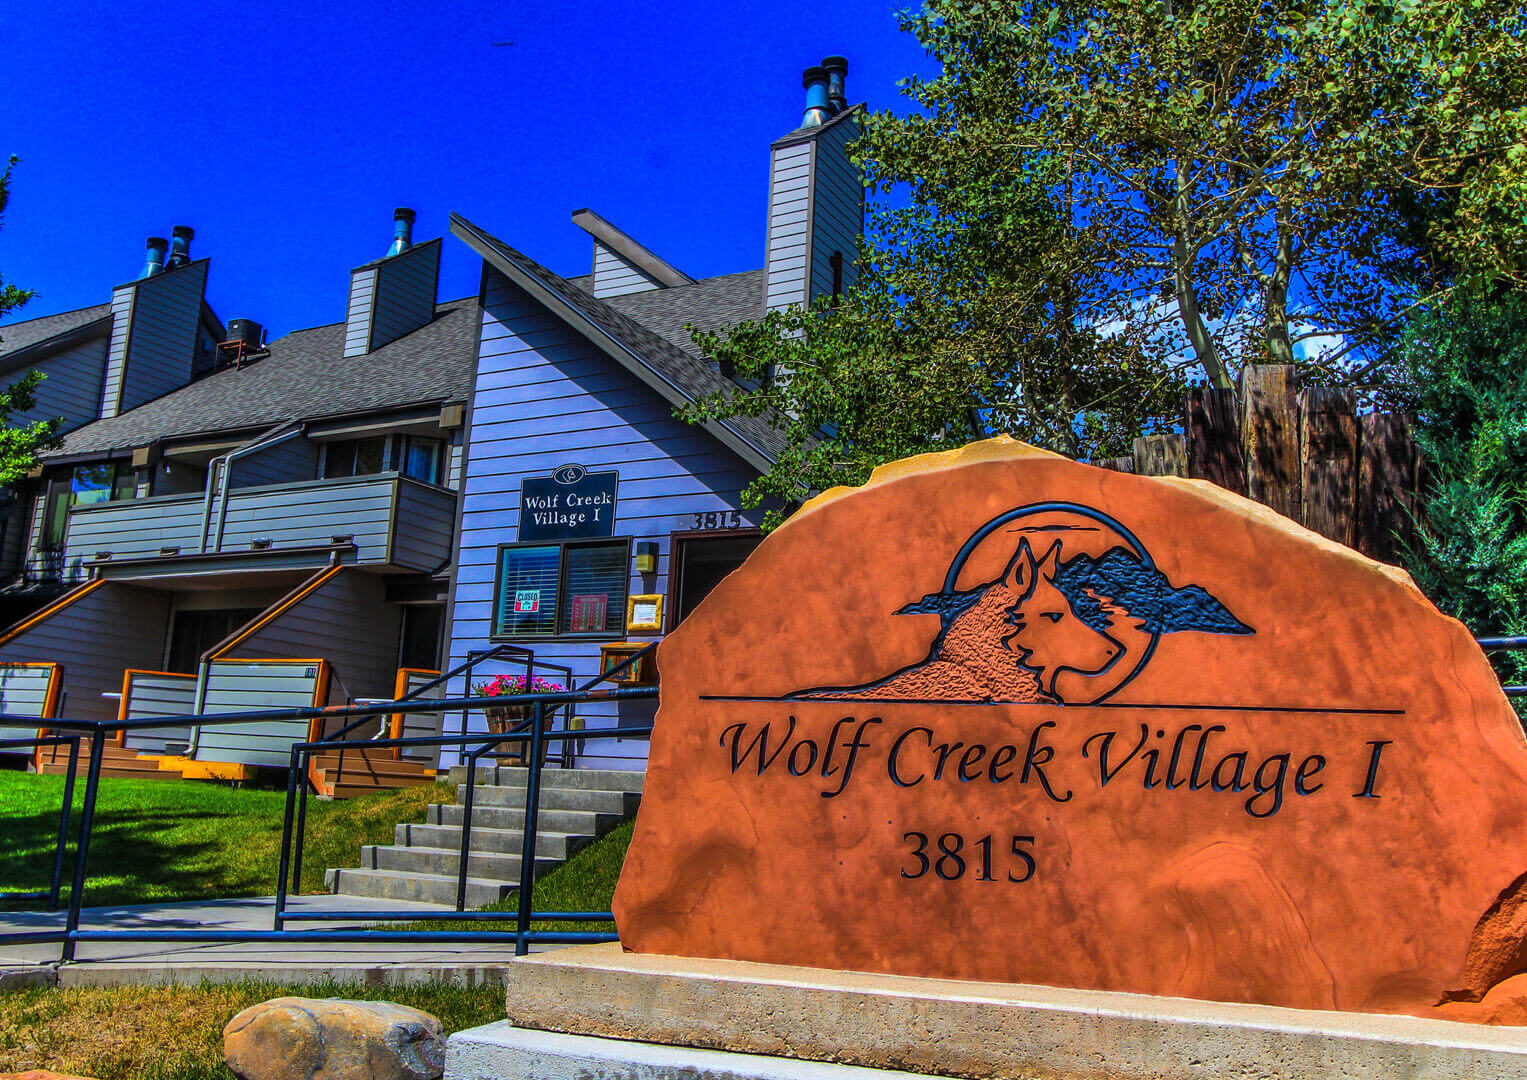 A vibrant resort signage at VRI's Wolf Creek Village I in Eden, Utah.